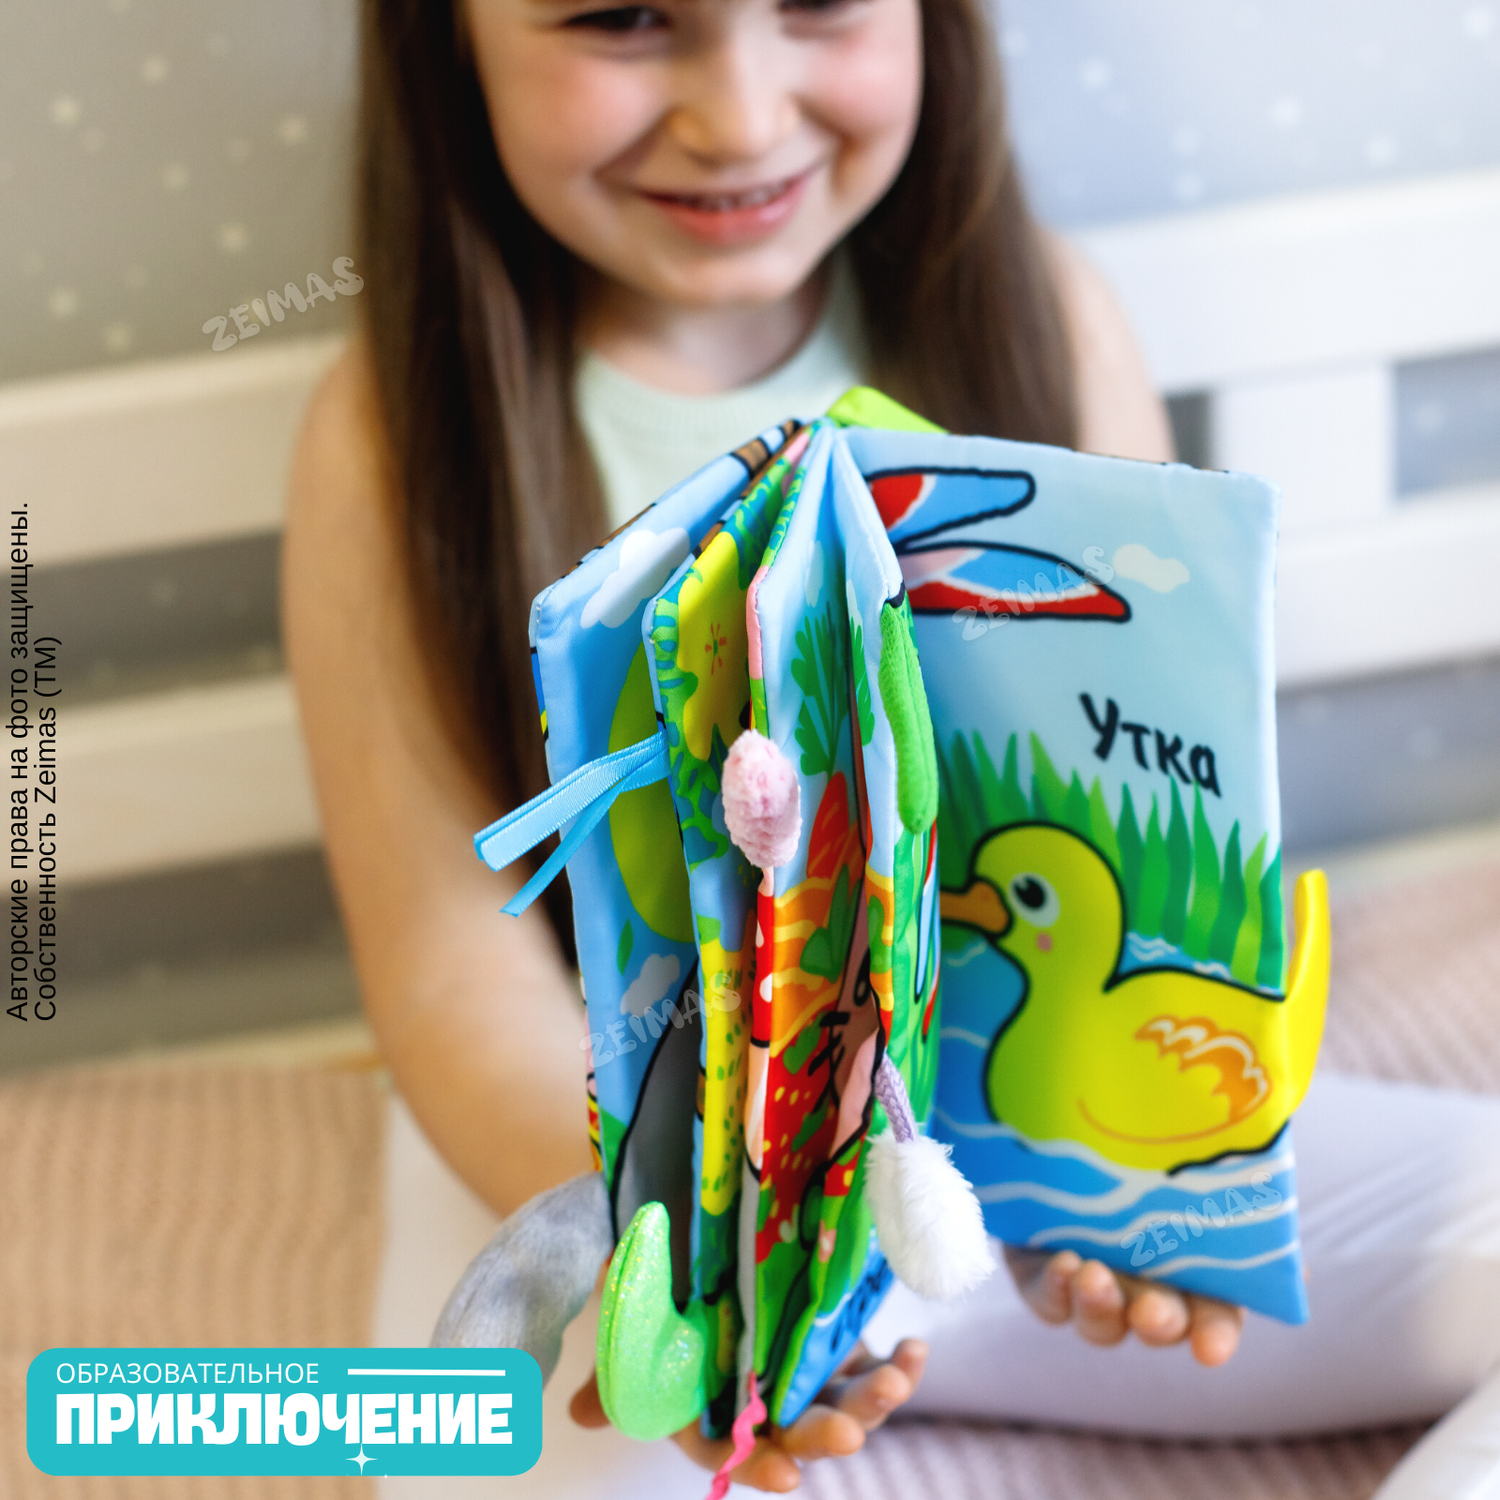 Детские Игрушки Оптом в Украине от - Интернет-Магазин Beles